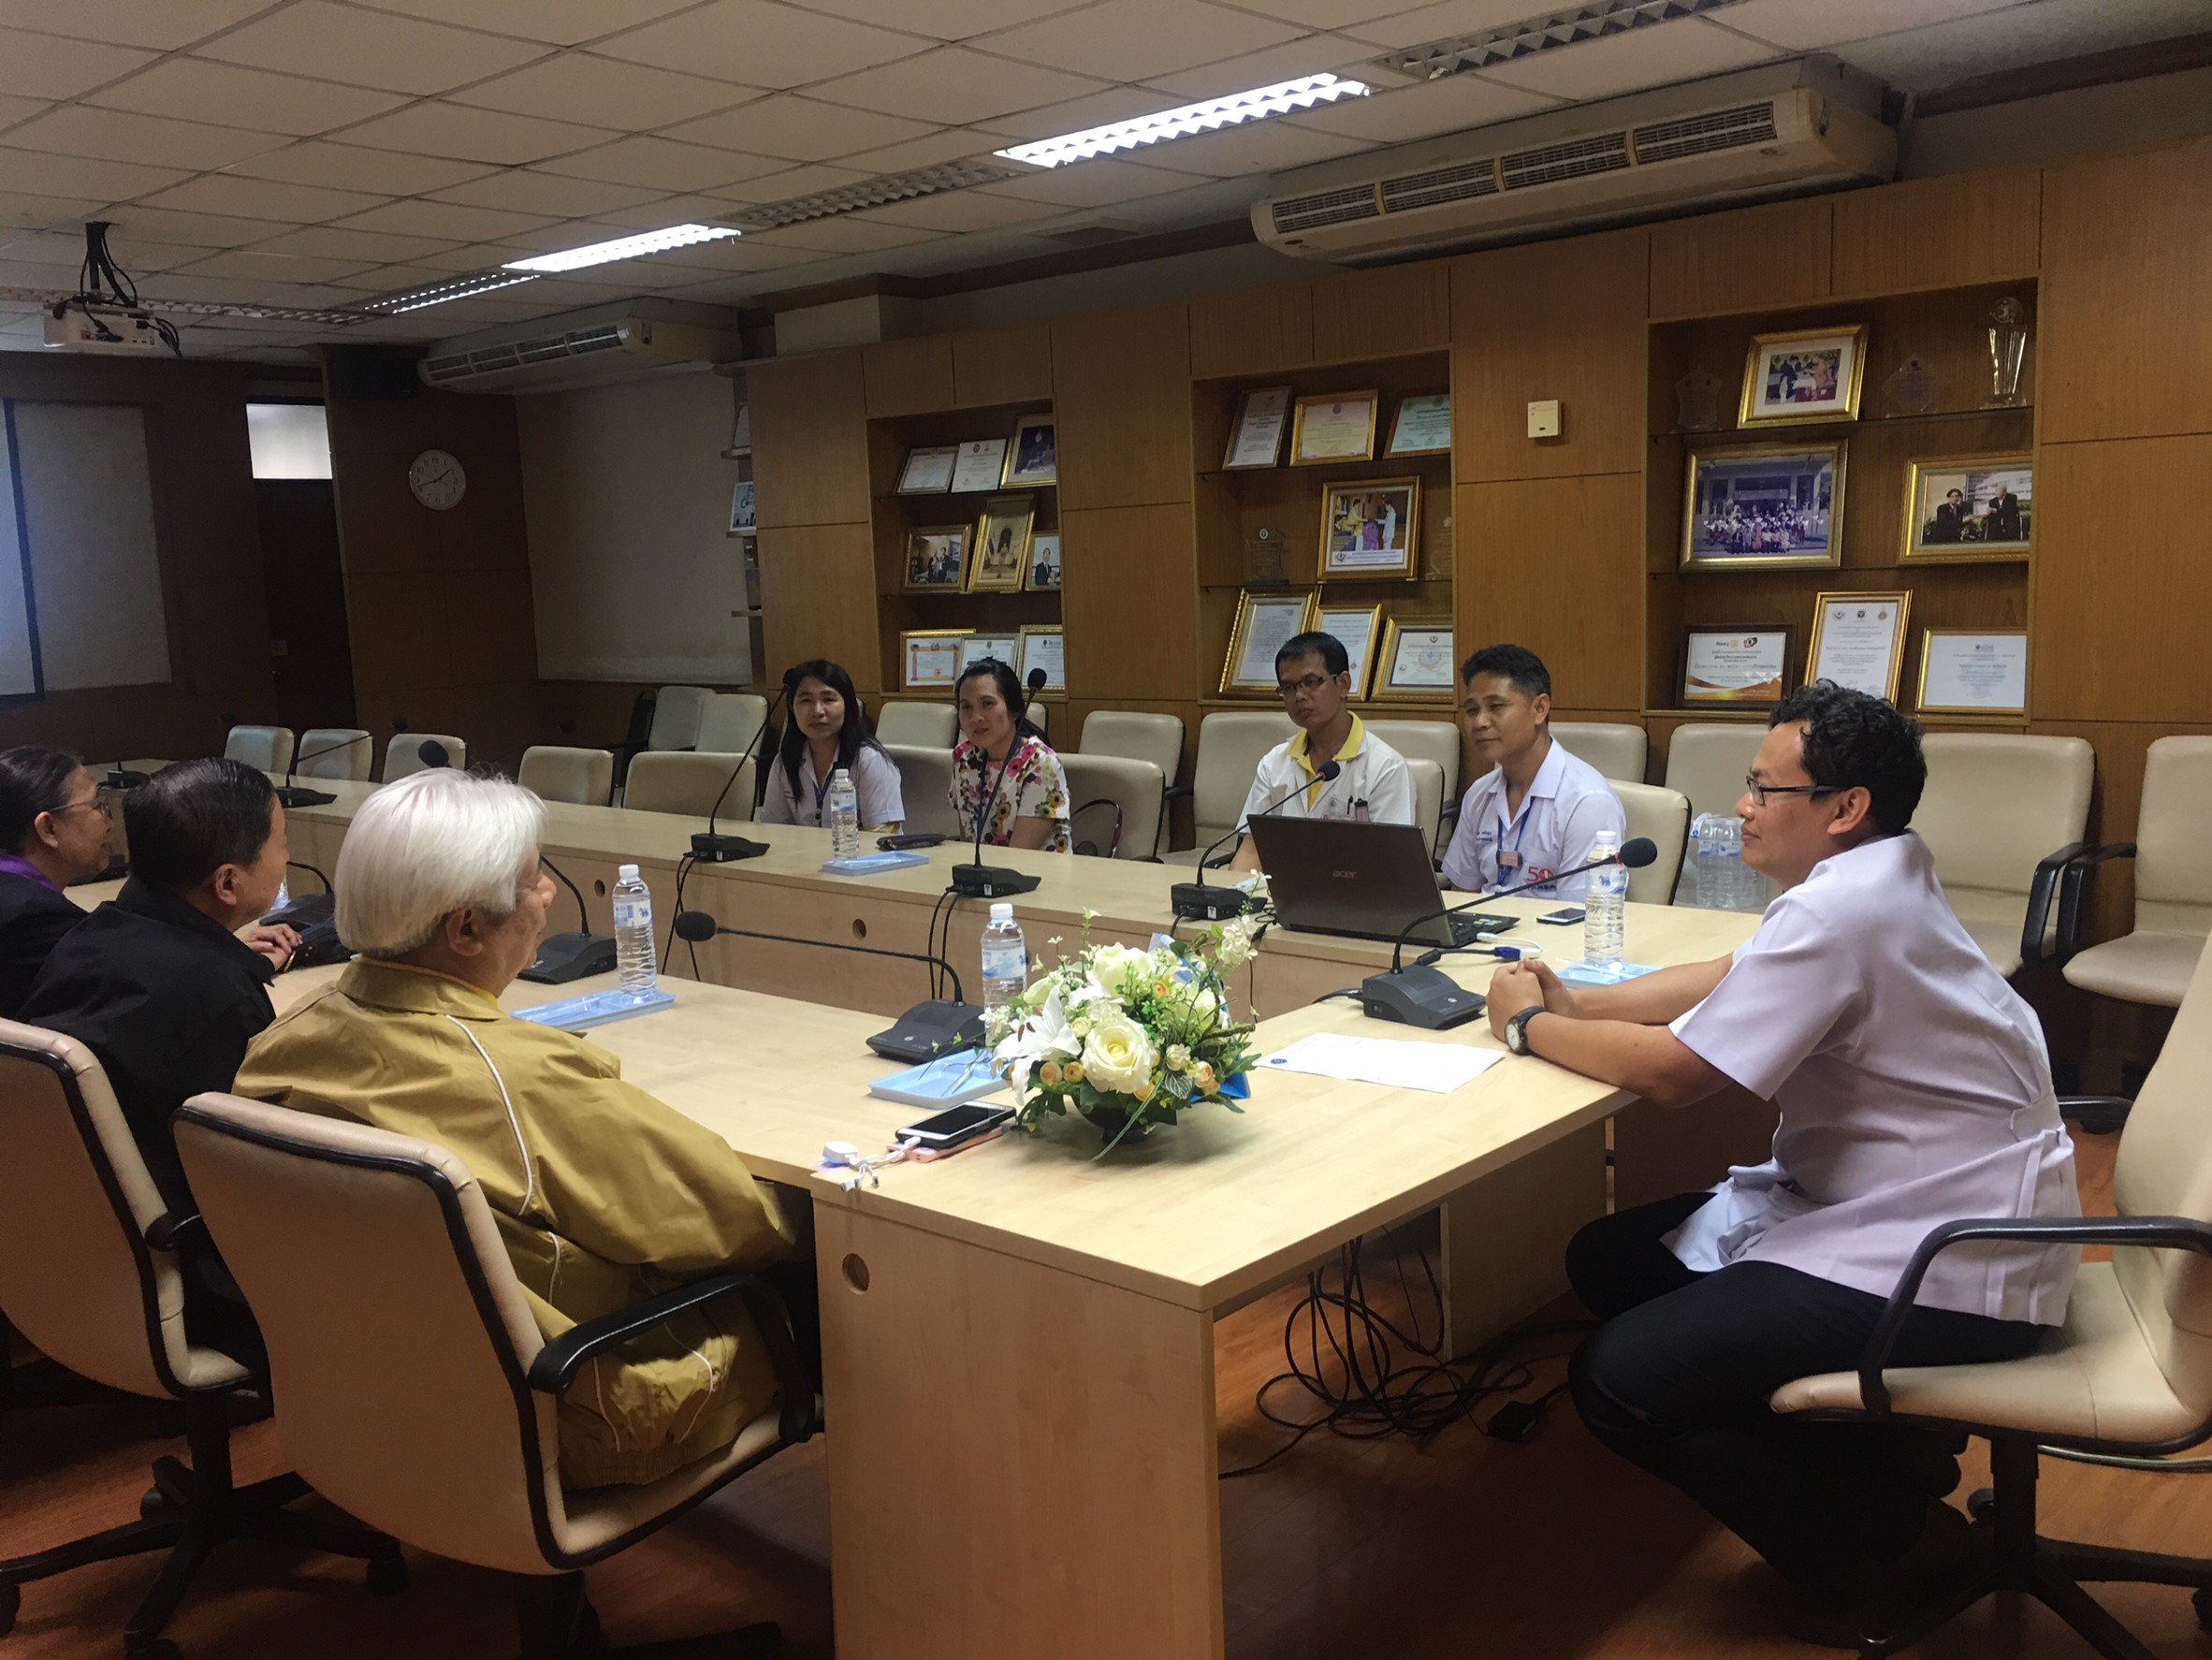 ประชุมวิชาการร่วมกับรังสีการแพทย์แห่งประเทศไทย ครั้งที่17 27-29 พ.ย. - พร้อมเข้าเยี่ยมและให้กำลังใจหน่วยงานรังสีวิทยาในพื้นที่จังหวัดอุบลราชธานีระหว่างวันที่ 25-26 พฤศจิกายน 2562 31